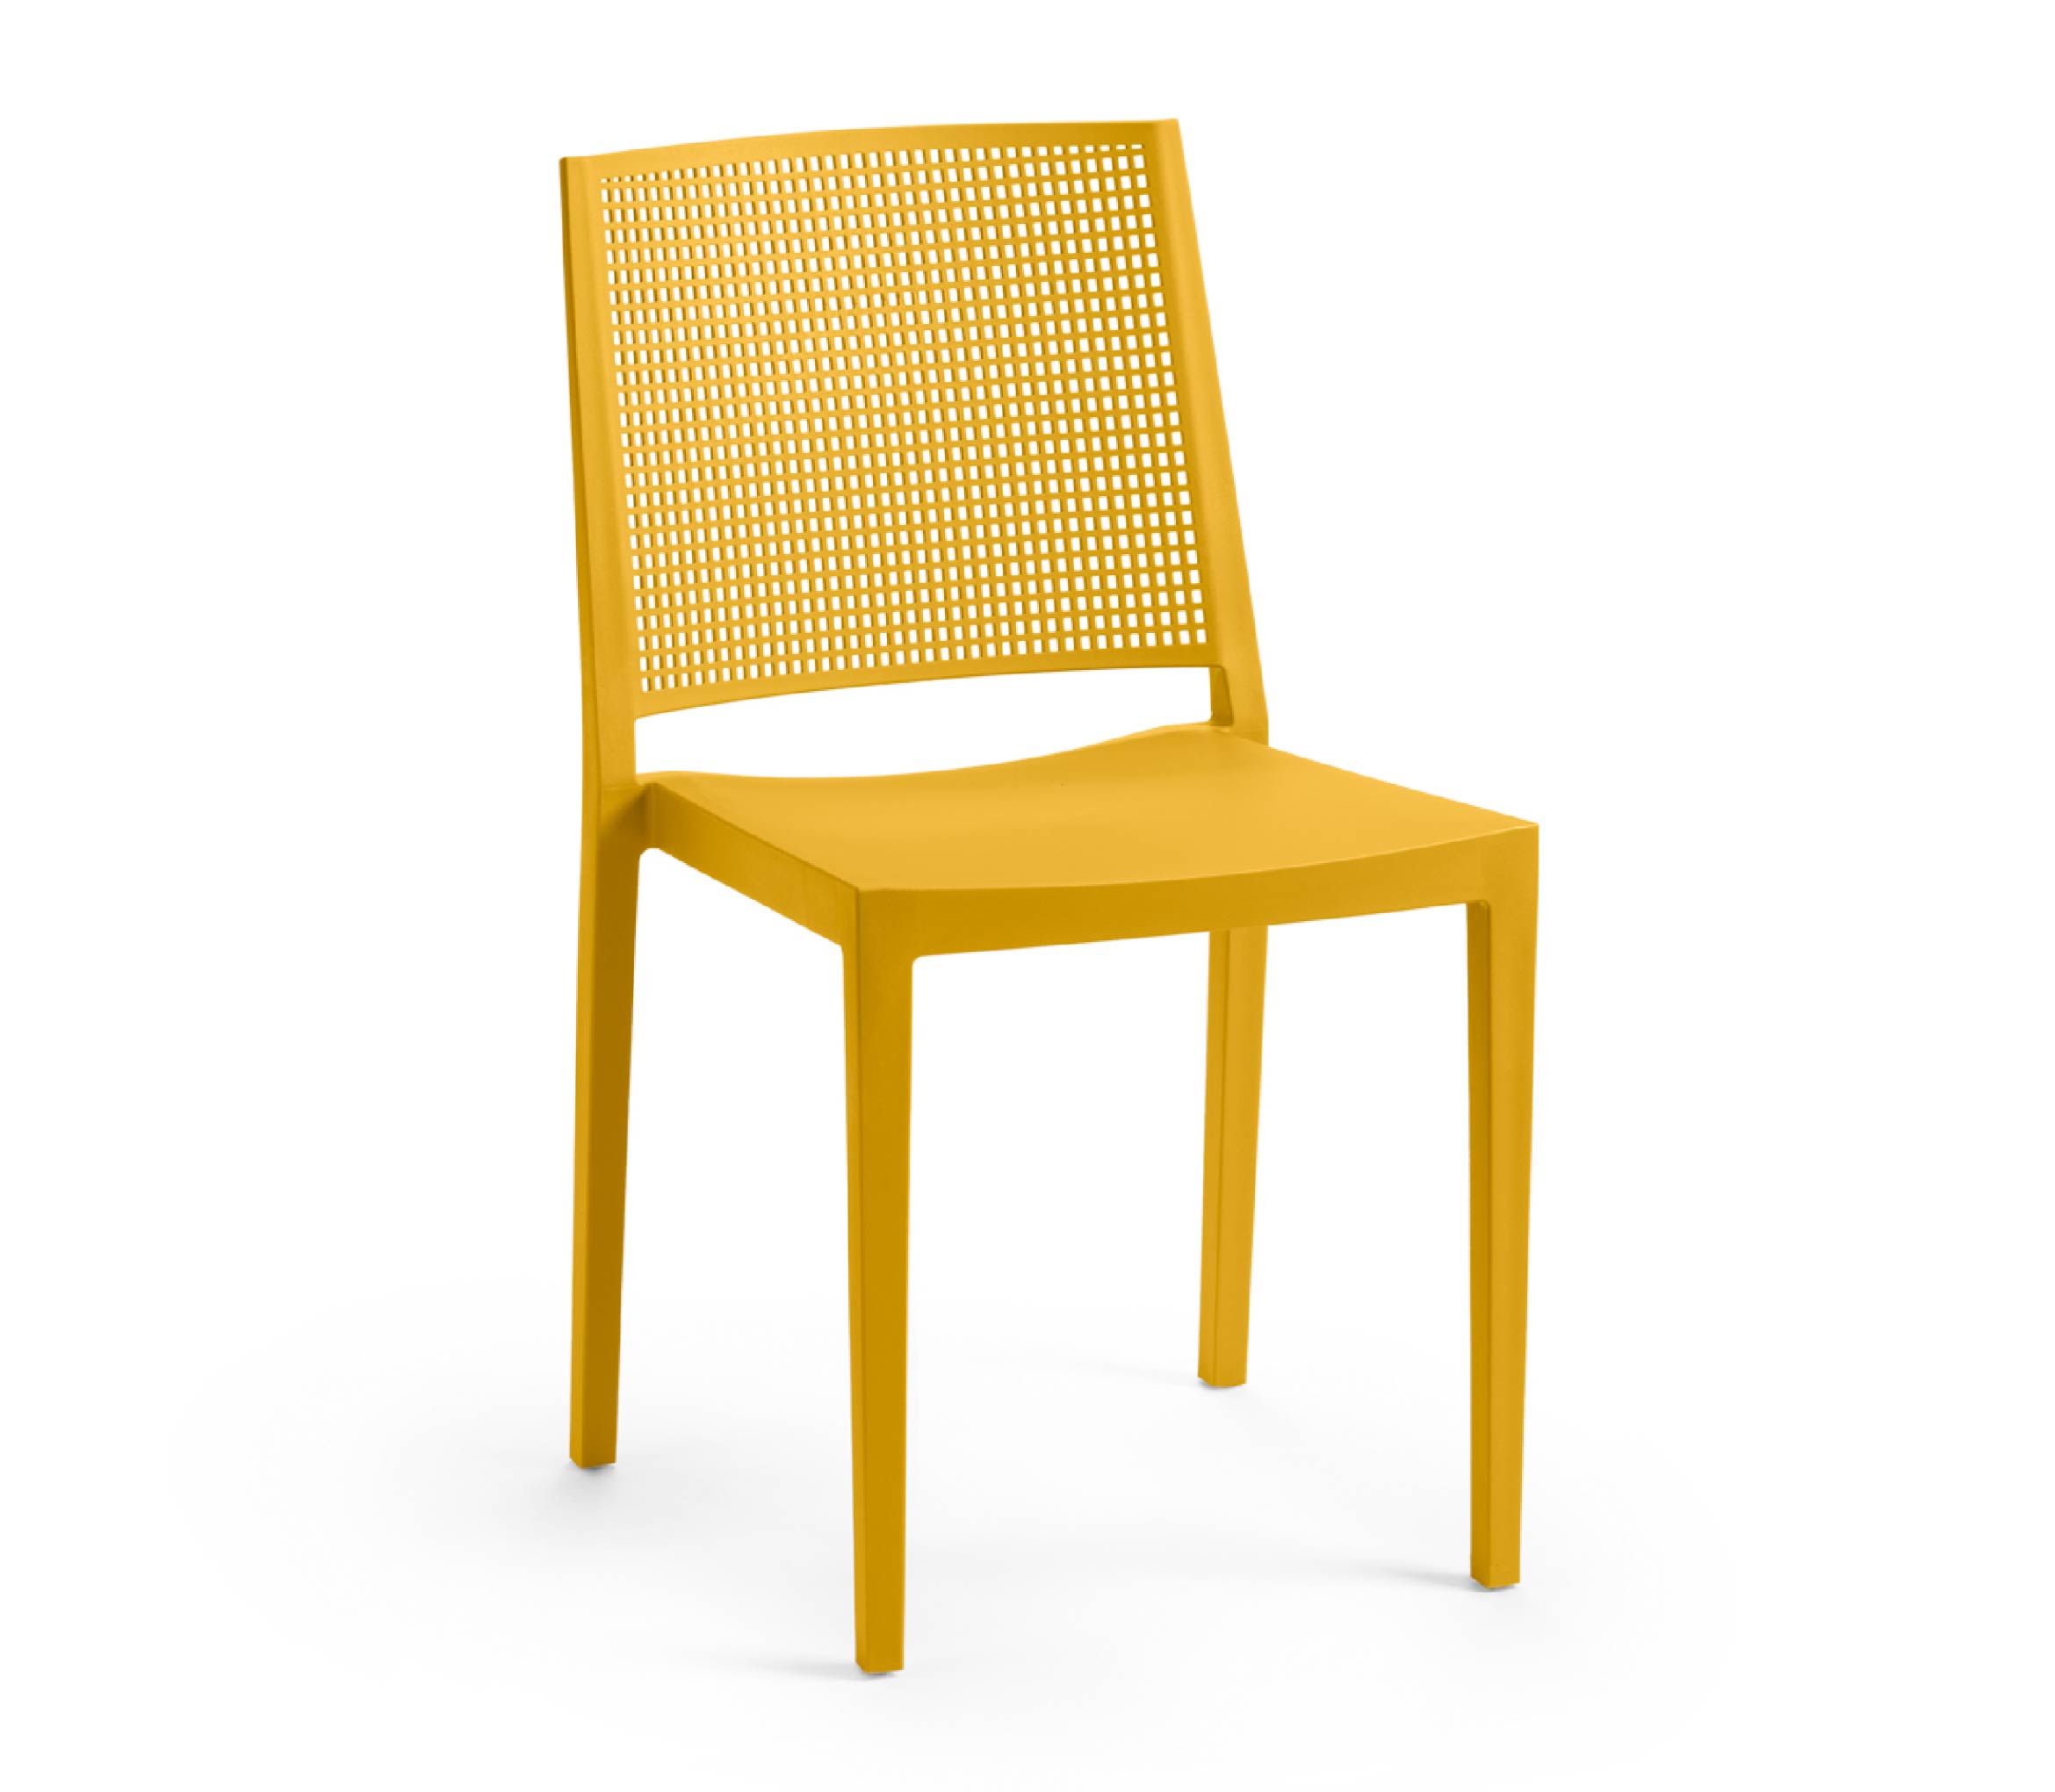 TENSAI_FURNITURE_GRID_MOSTARD_205 Polypropylene chair